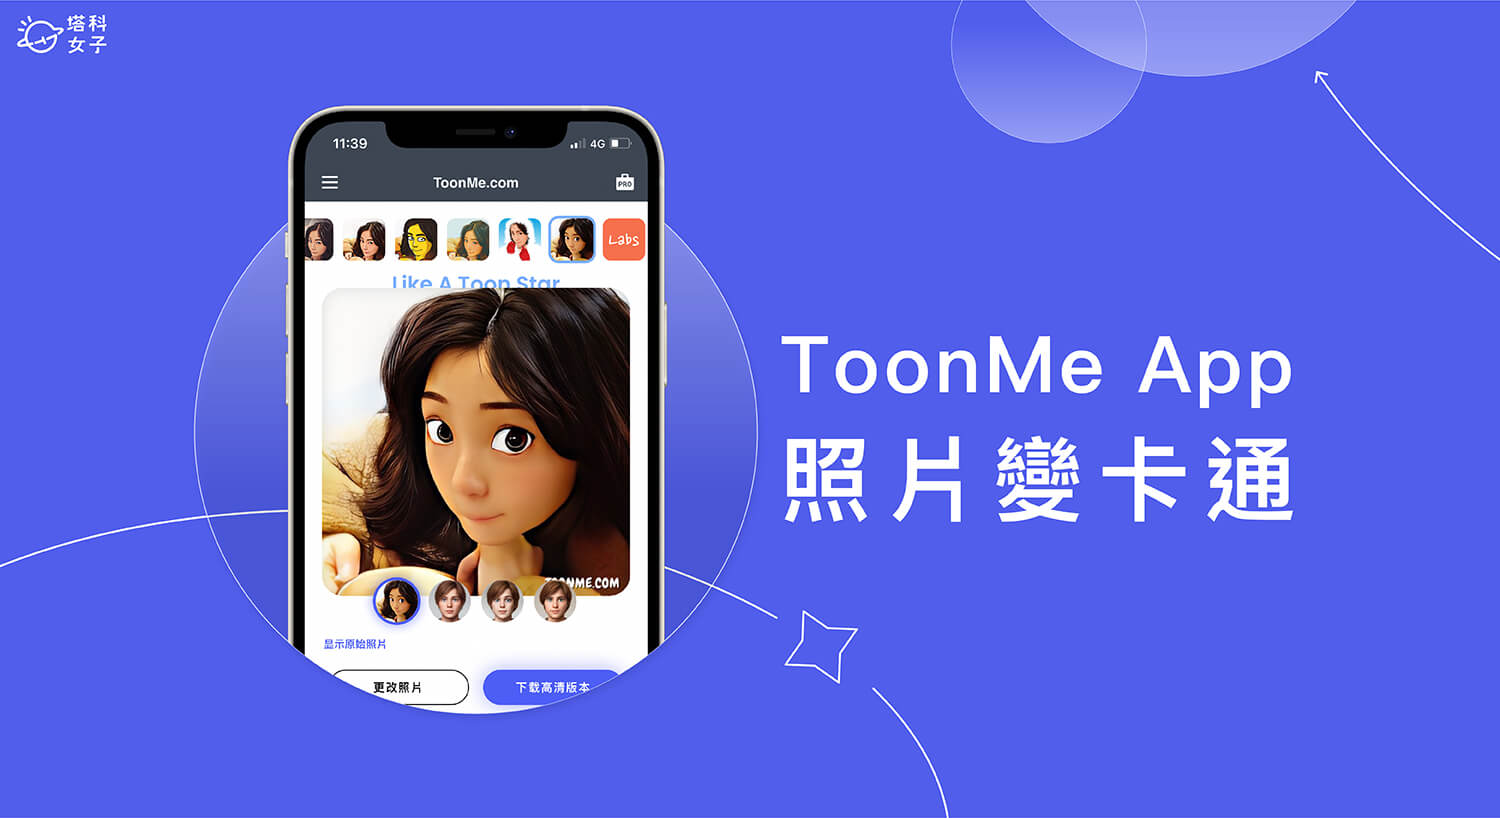 照片變卡通 App《ToonMe》提供卡通濾鏡將真人照片轉 Q 版卡通或漫畫